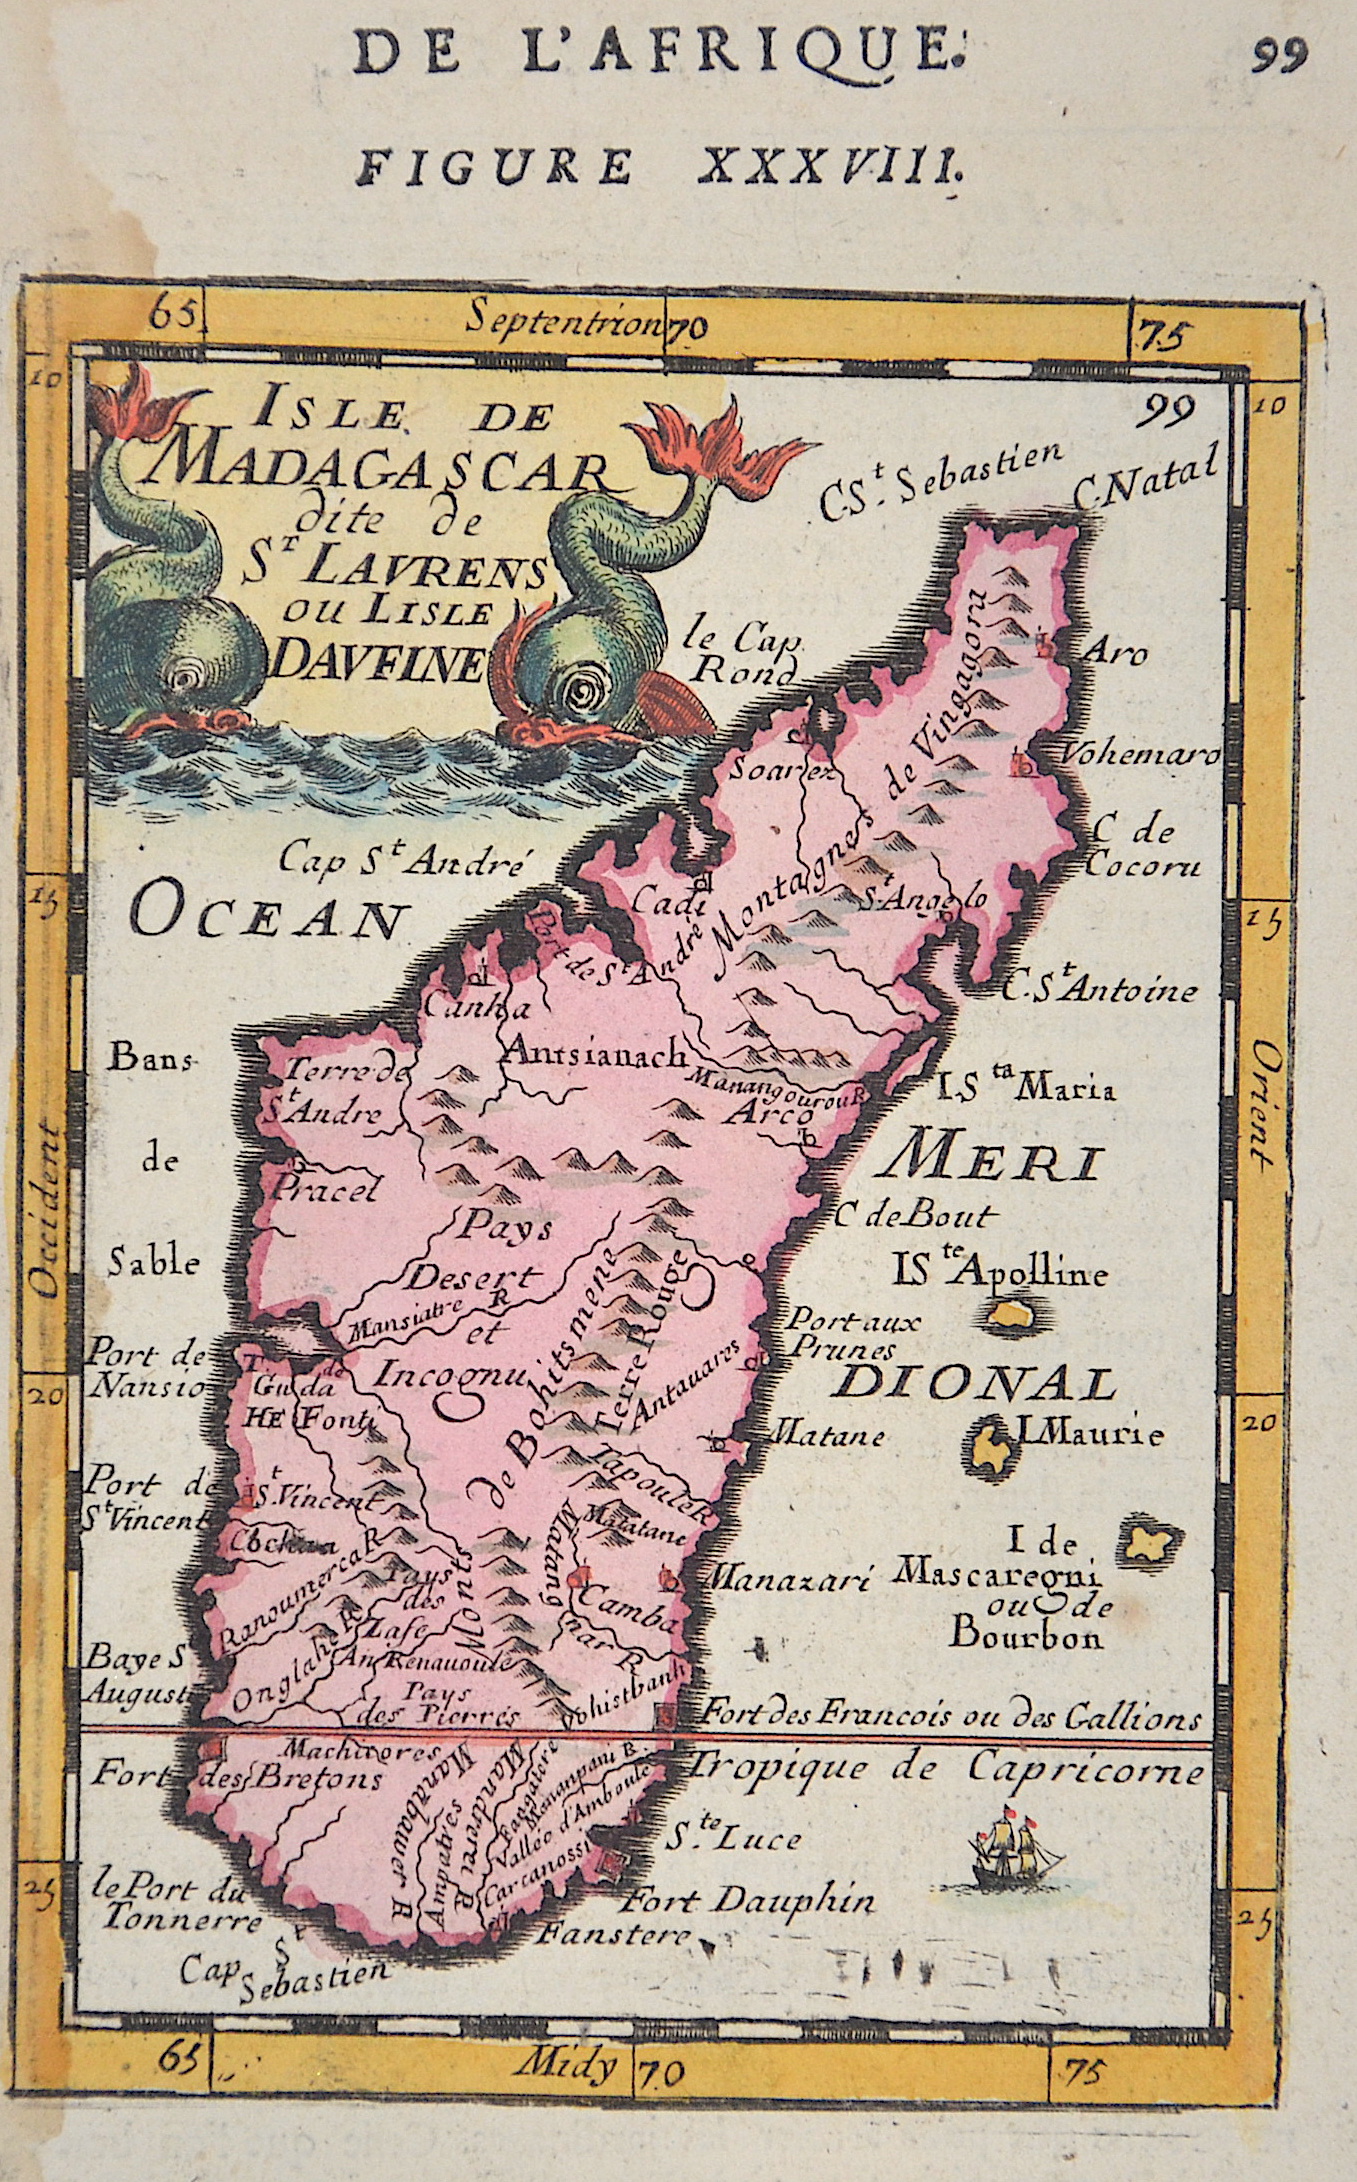 Mallet Alain Manesson Isle de Madagascar dite de St. Laurenz ou el isle Davfine